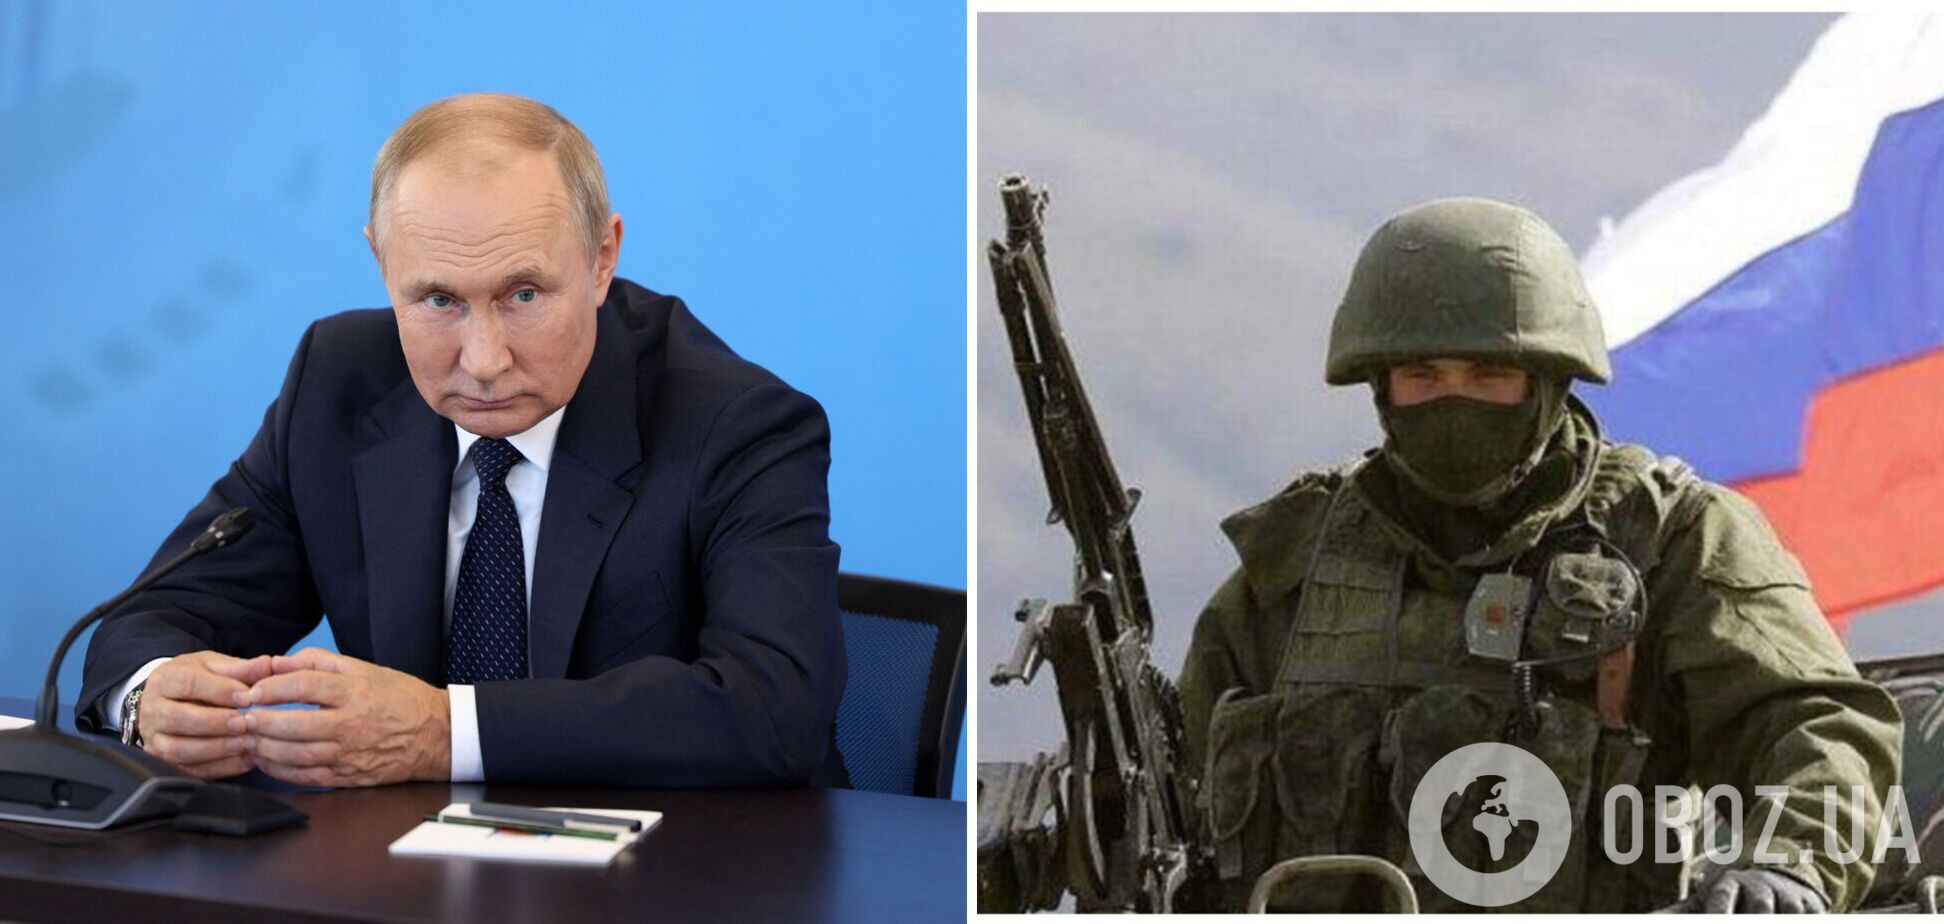 Путин хочет разрушить Украину, но не это его конечная цель, – оппозиционер из РФ